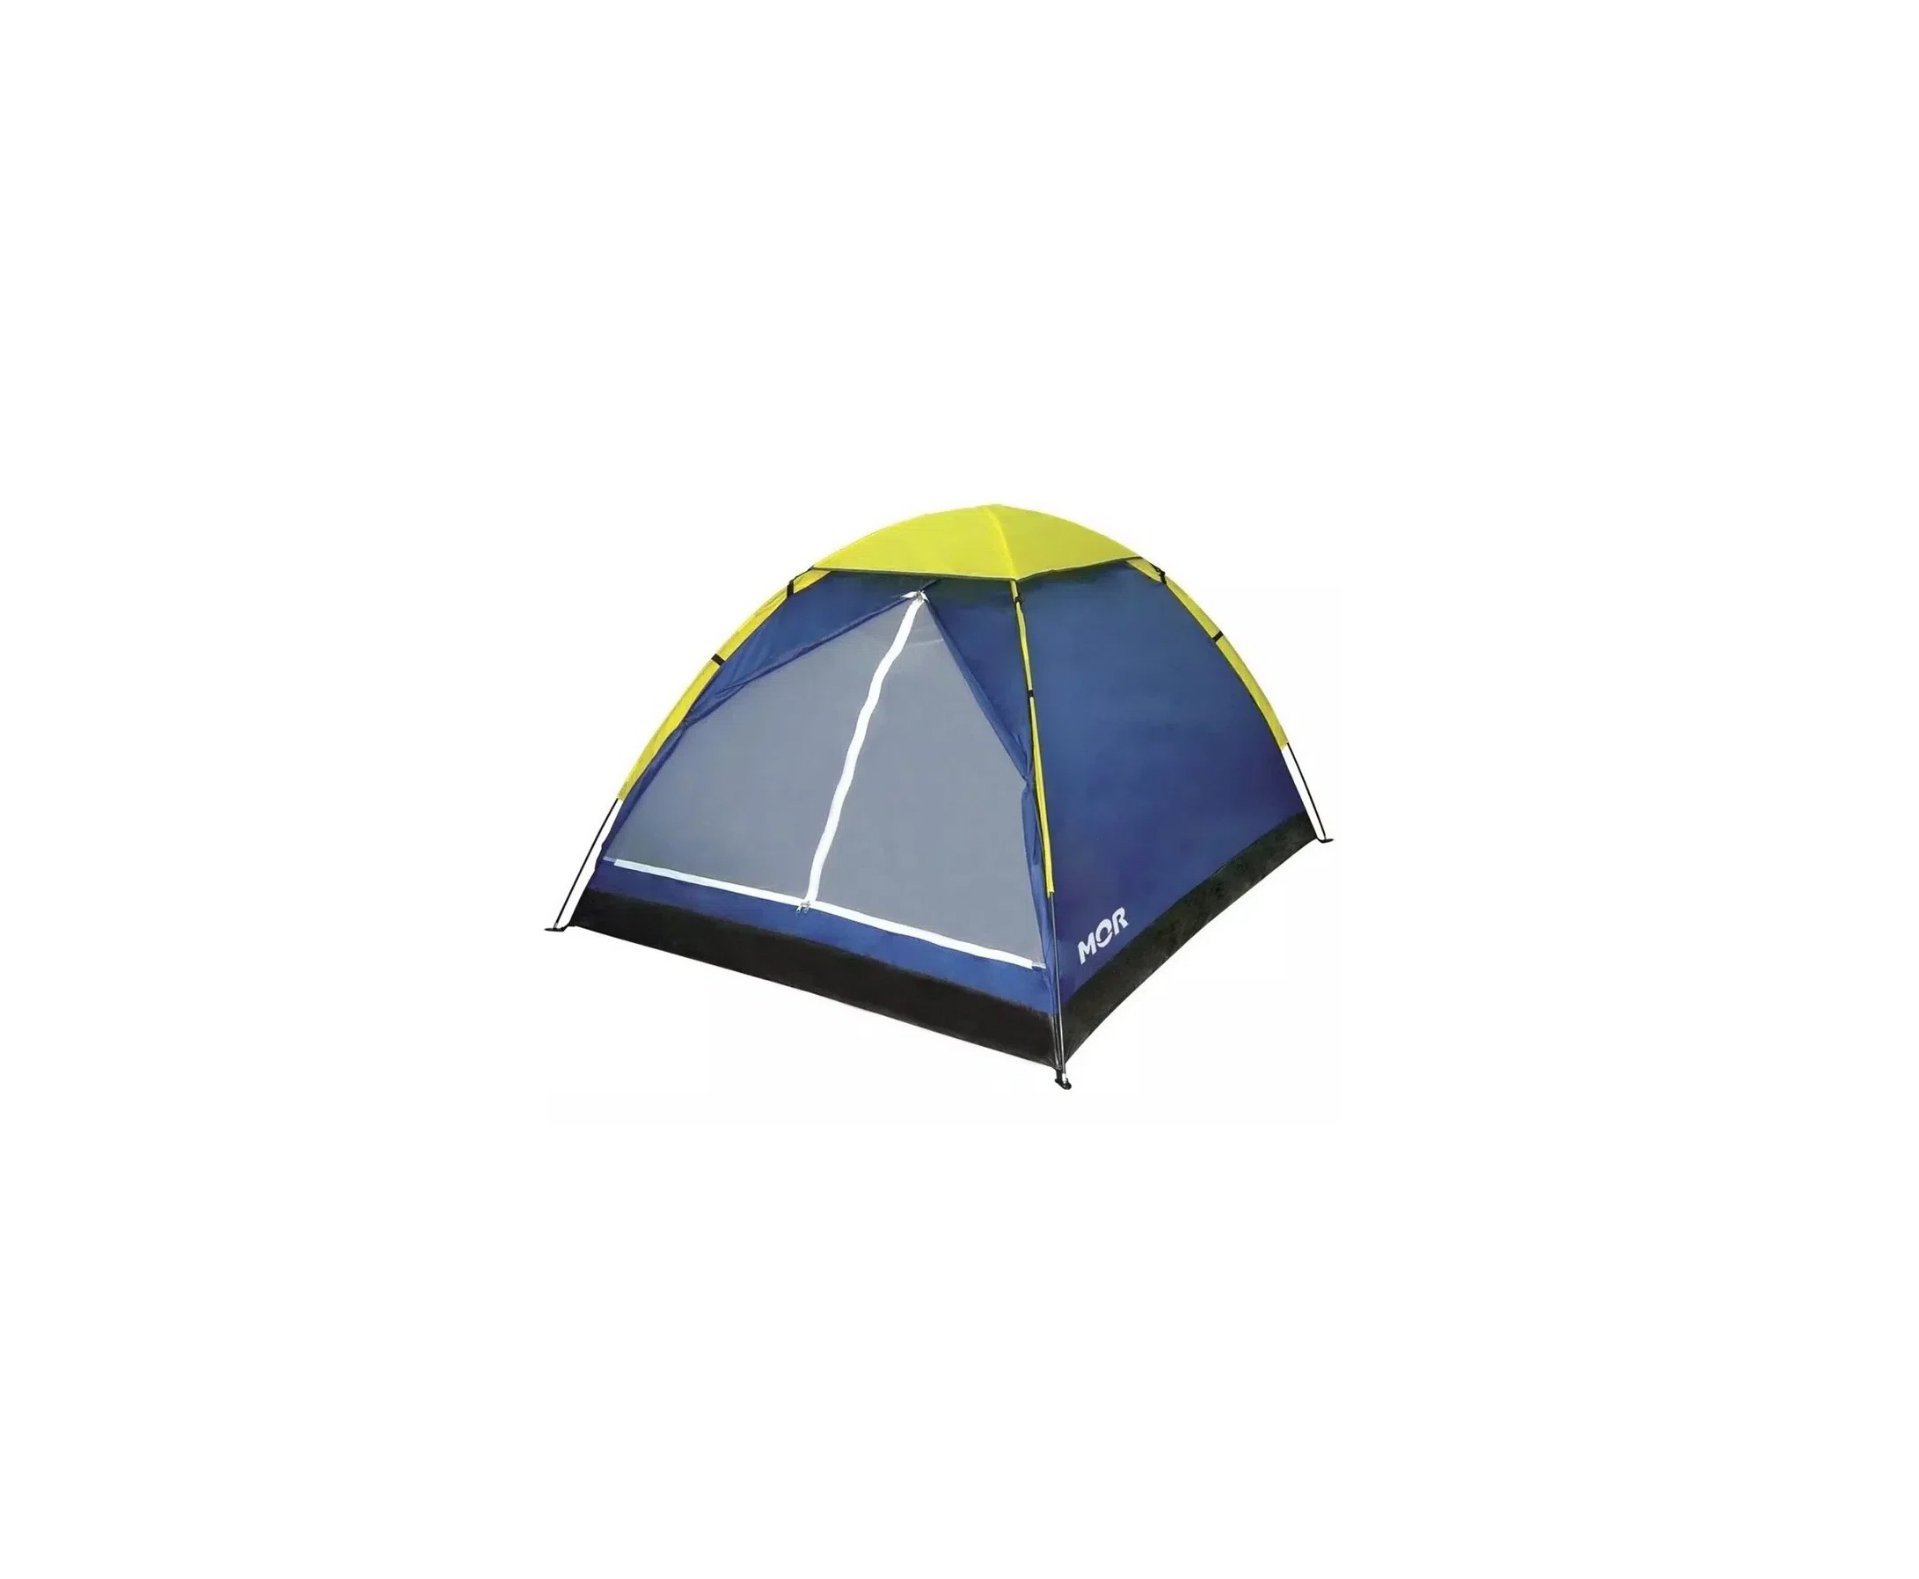 Saco dormir Bugy solteiro Camping NKT 8°C e 15°C Preto AZUL + Barraca Iglu 4 Pessoas